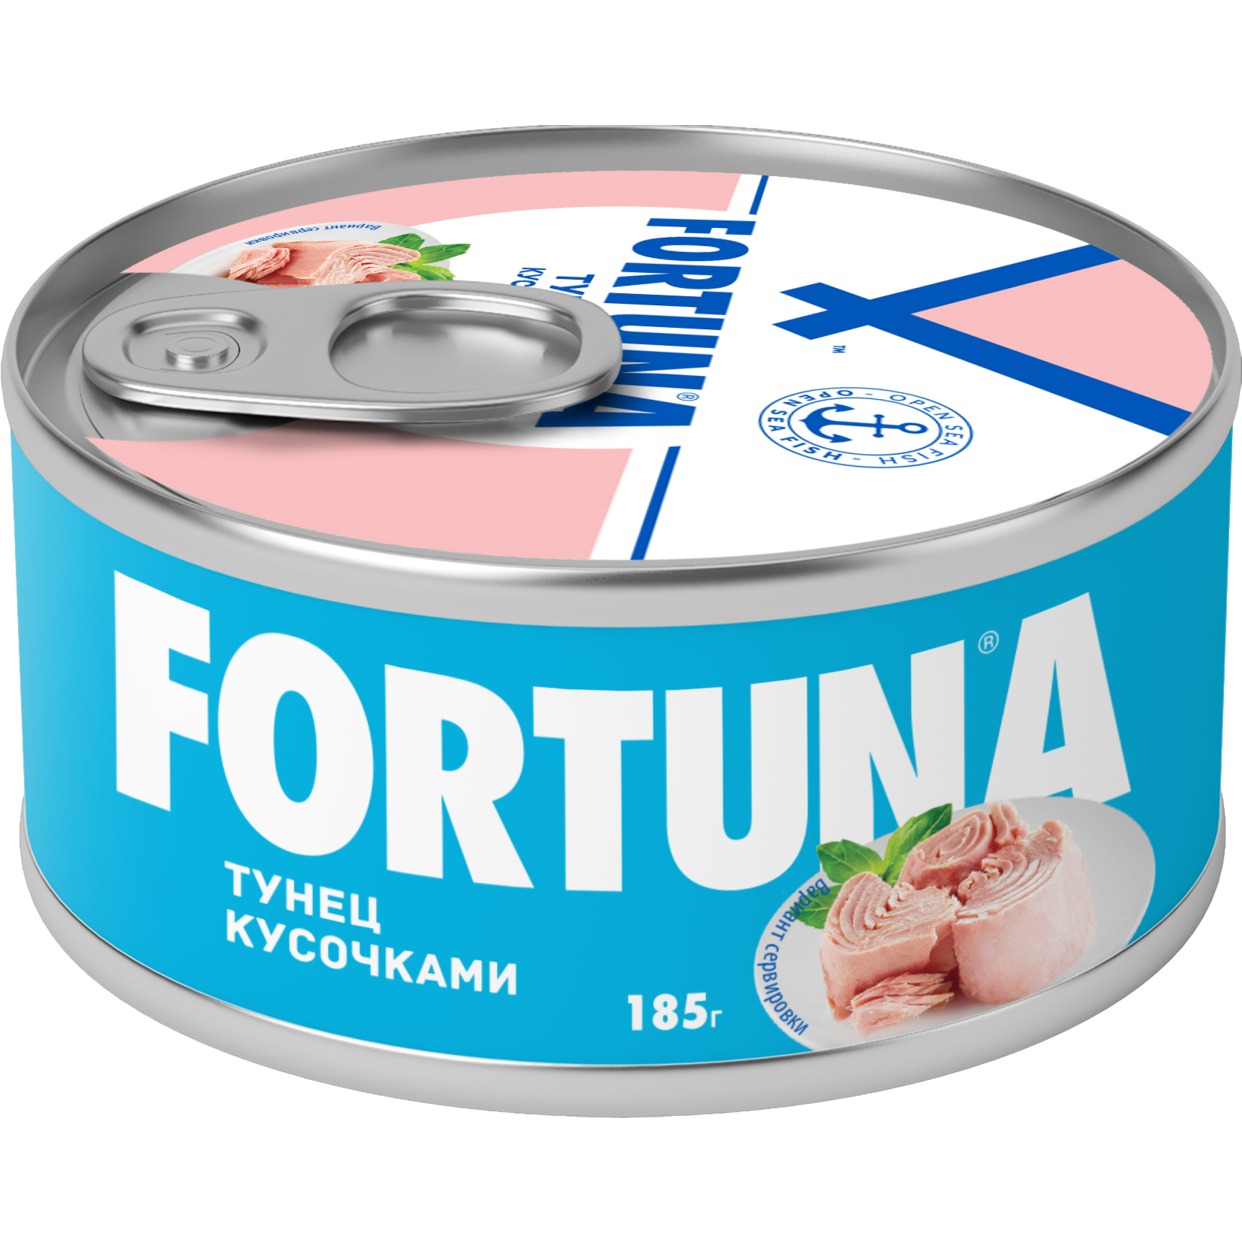 Тунец Fortuna, 185 г по акции в Пятерочке